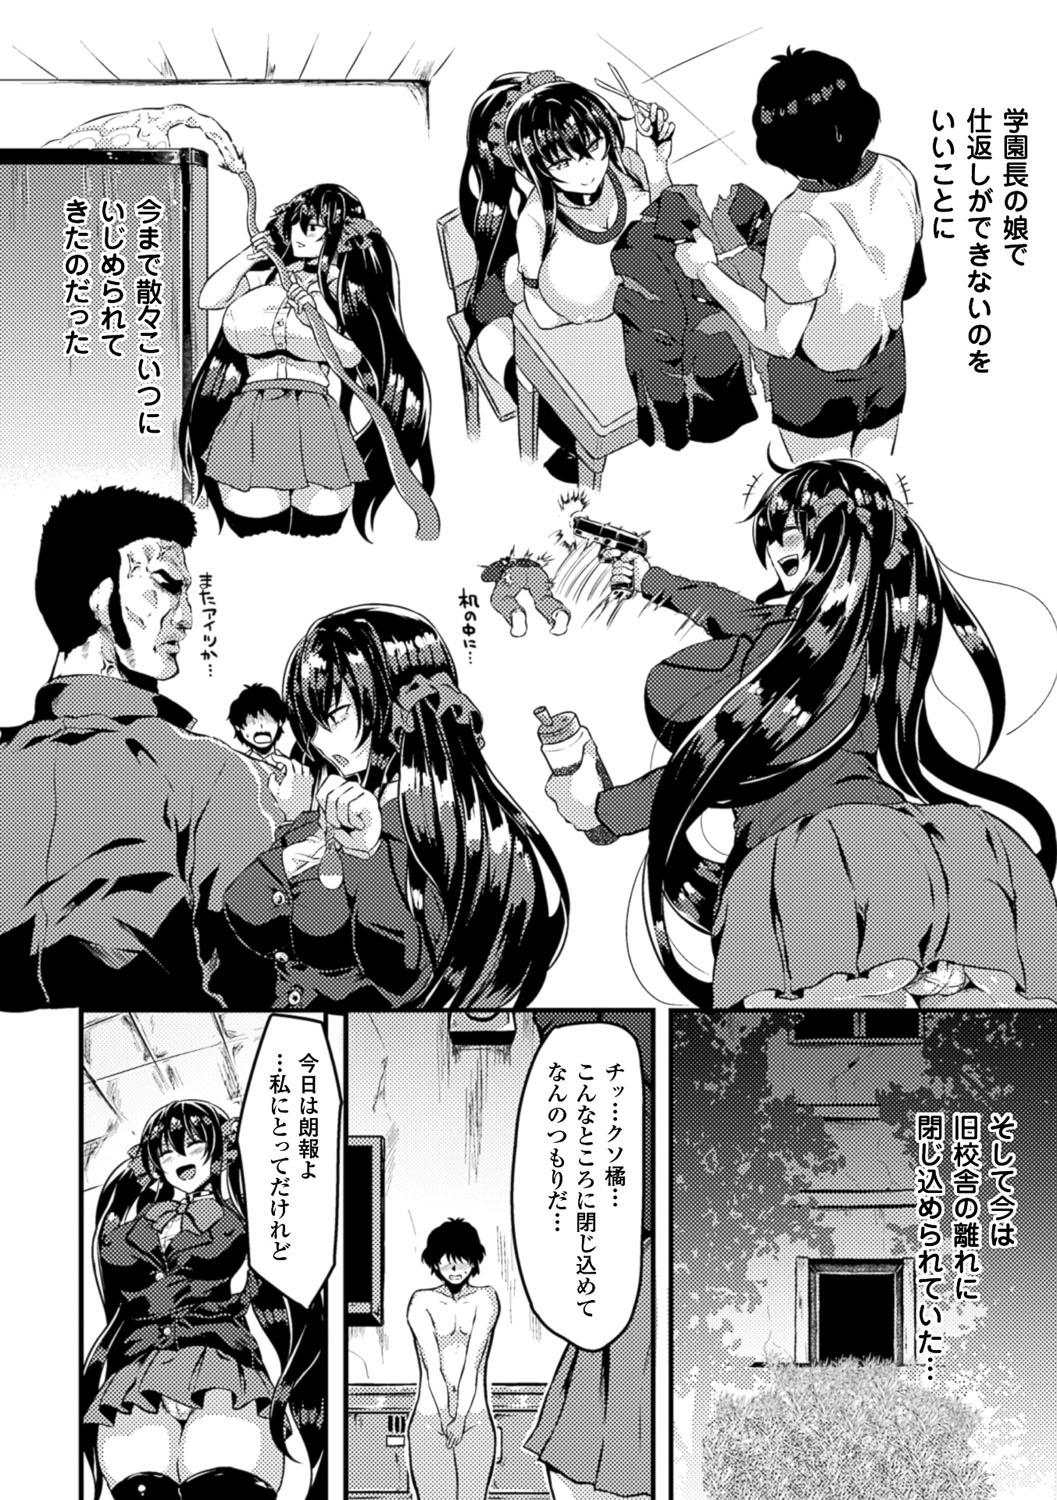 Bessatsu Comic Unreal Ijimekko ni Fushigi na Chikara de Fukushuu Hen Digital Ban Vol. 2 7